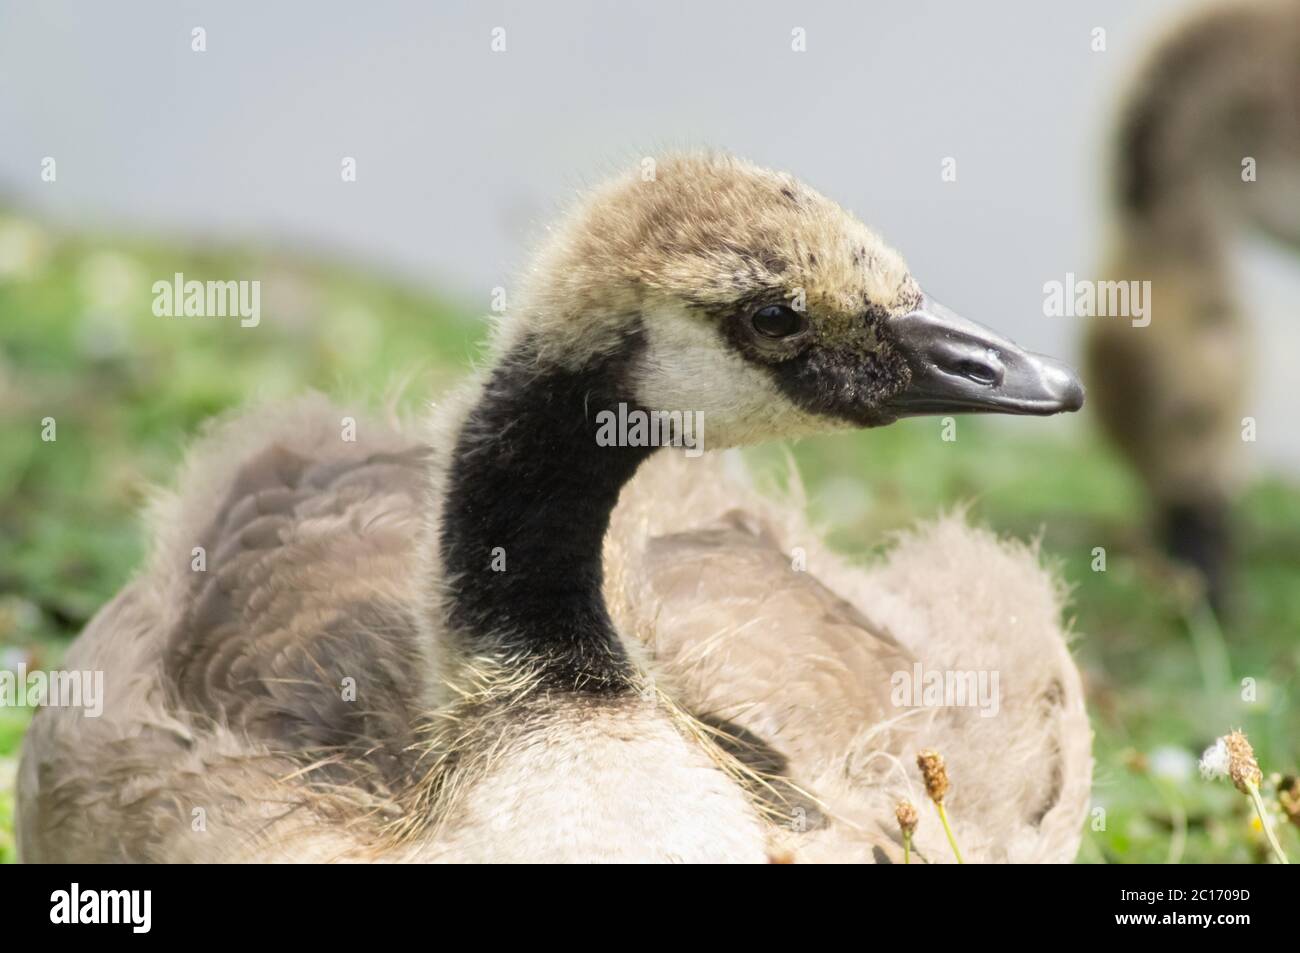 Gosling auf Gras sitzend neugierig auf den Fotografen - branta canadensis - menschliche Interaktion mit Tieren - Vogel Wasservögel anatidae Stockfoto